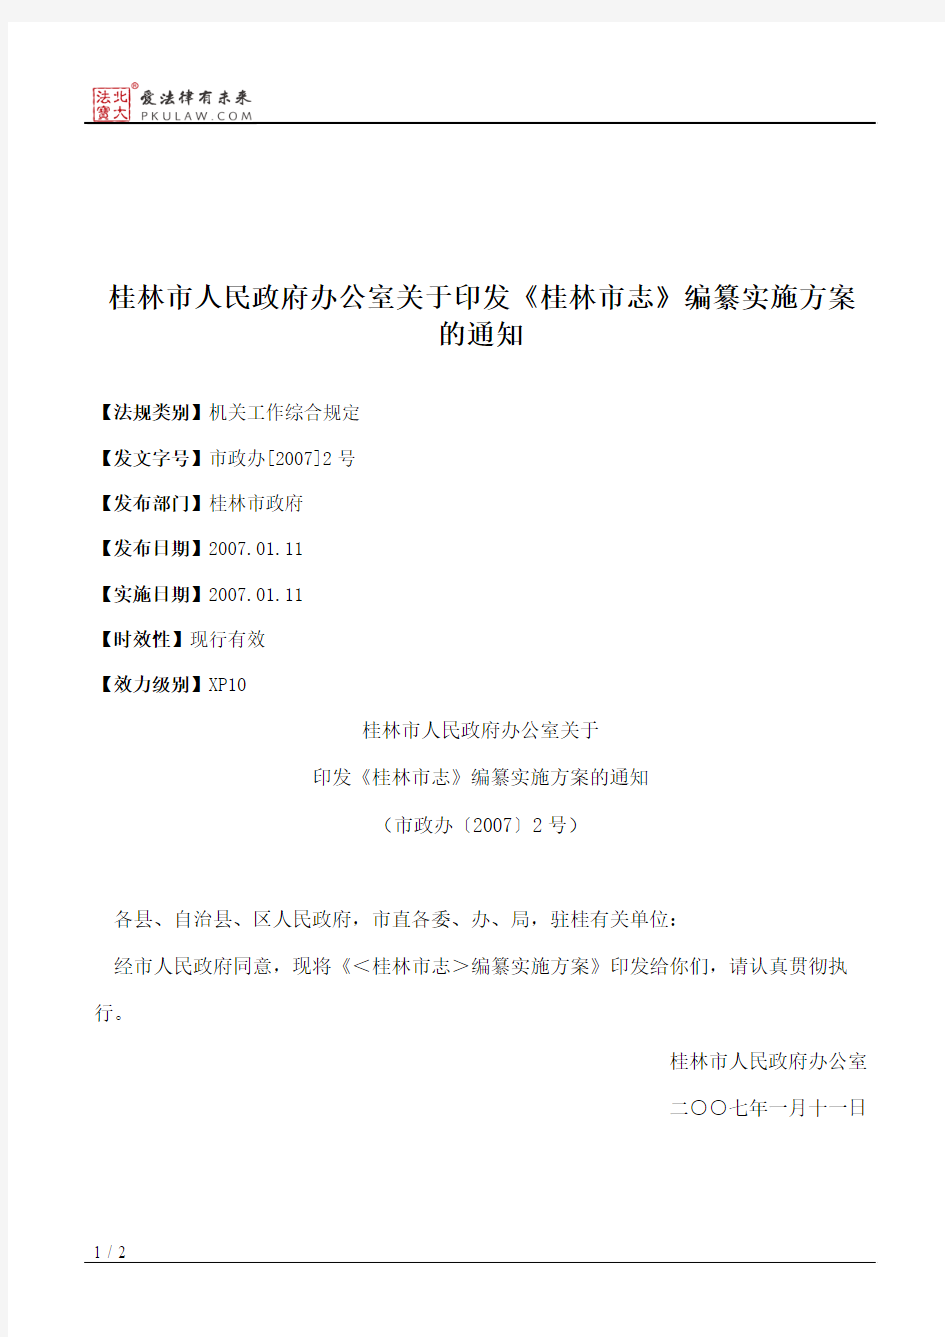 桂林市人民政府办公室关于印发《桂林市志》编纂实施方案的通知